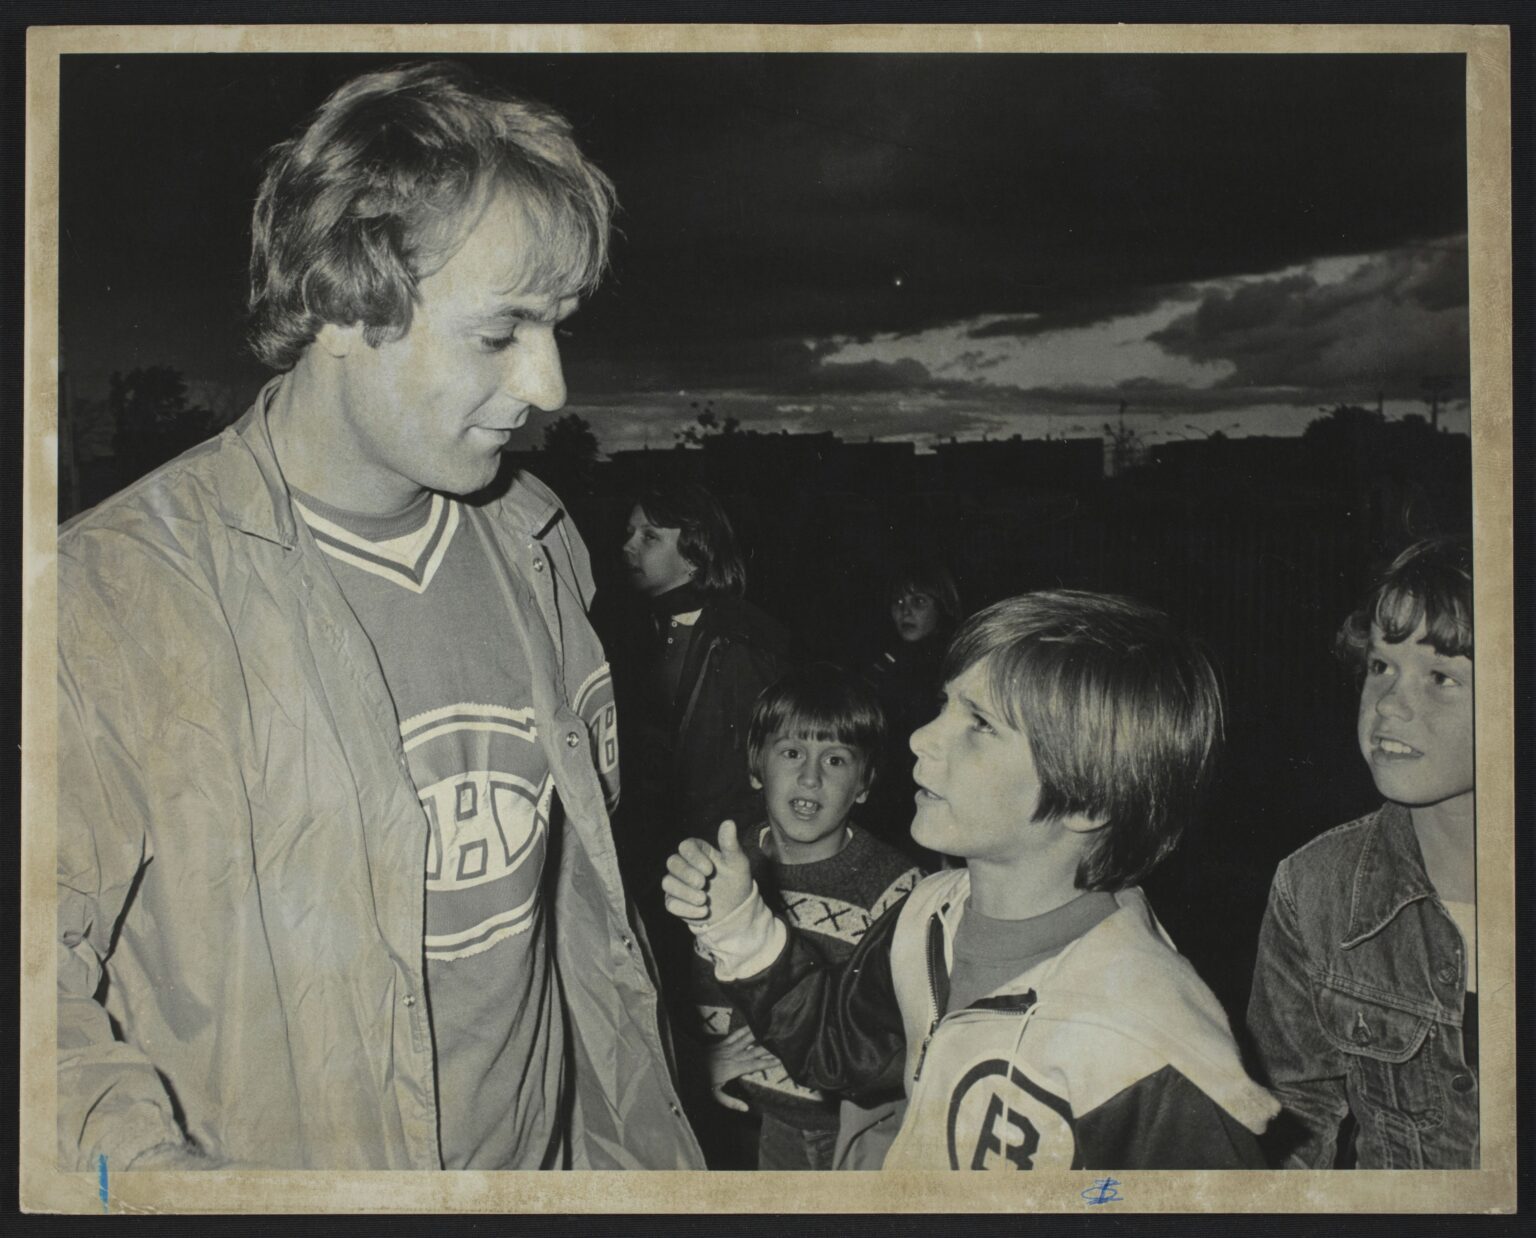 Le 18 août 1977, Guy Lafleur discute avec un jeune garçon portant un chandail des Bruins de Boston après une partie de baseball à Laval.